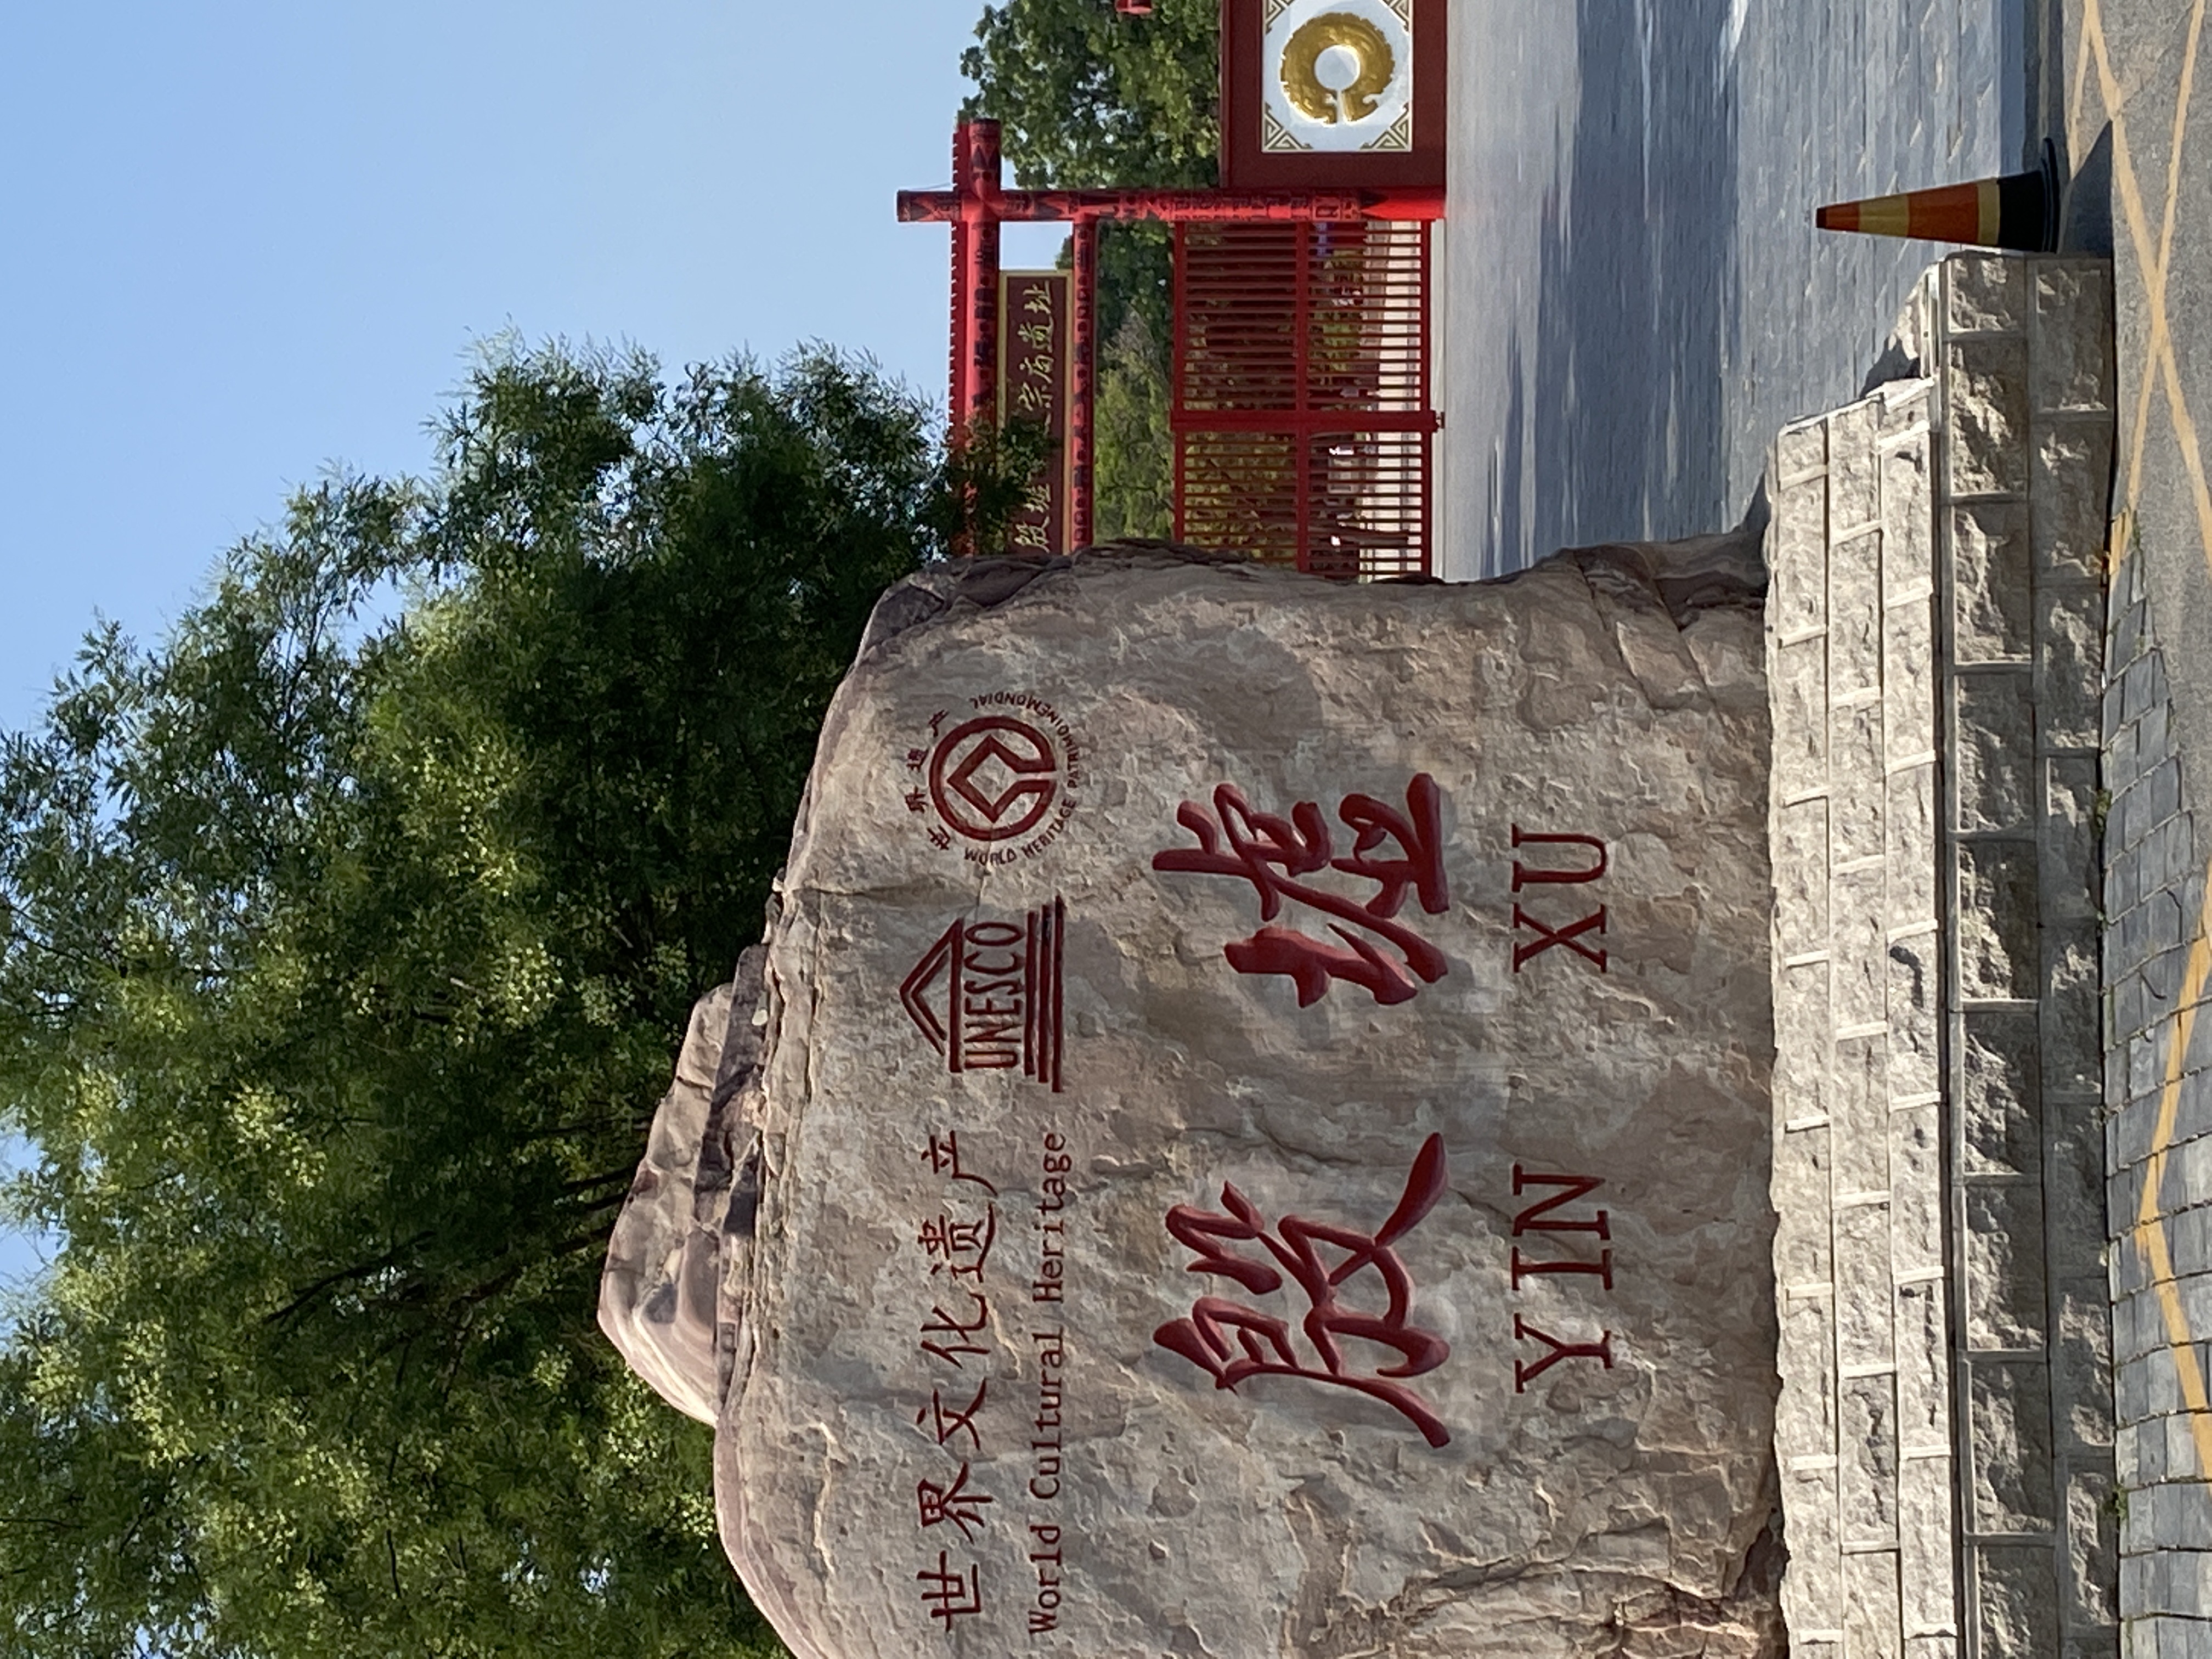 Yinxu ruins in Henan